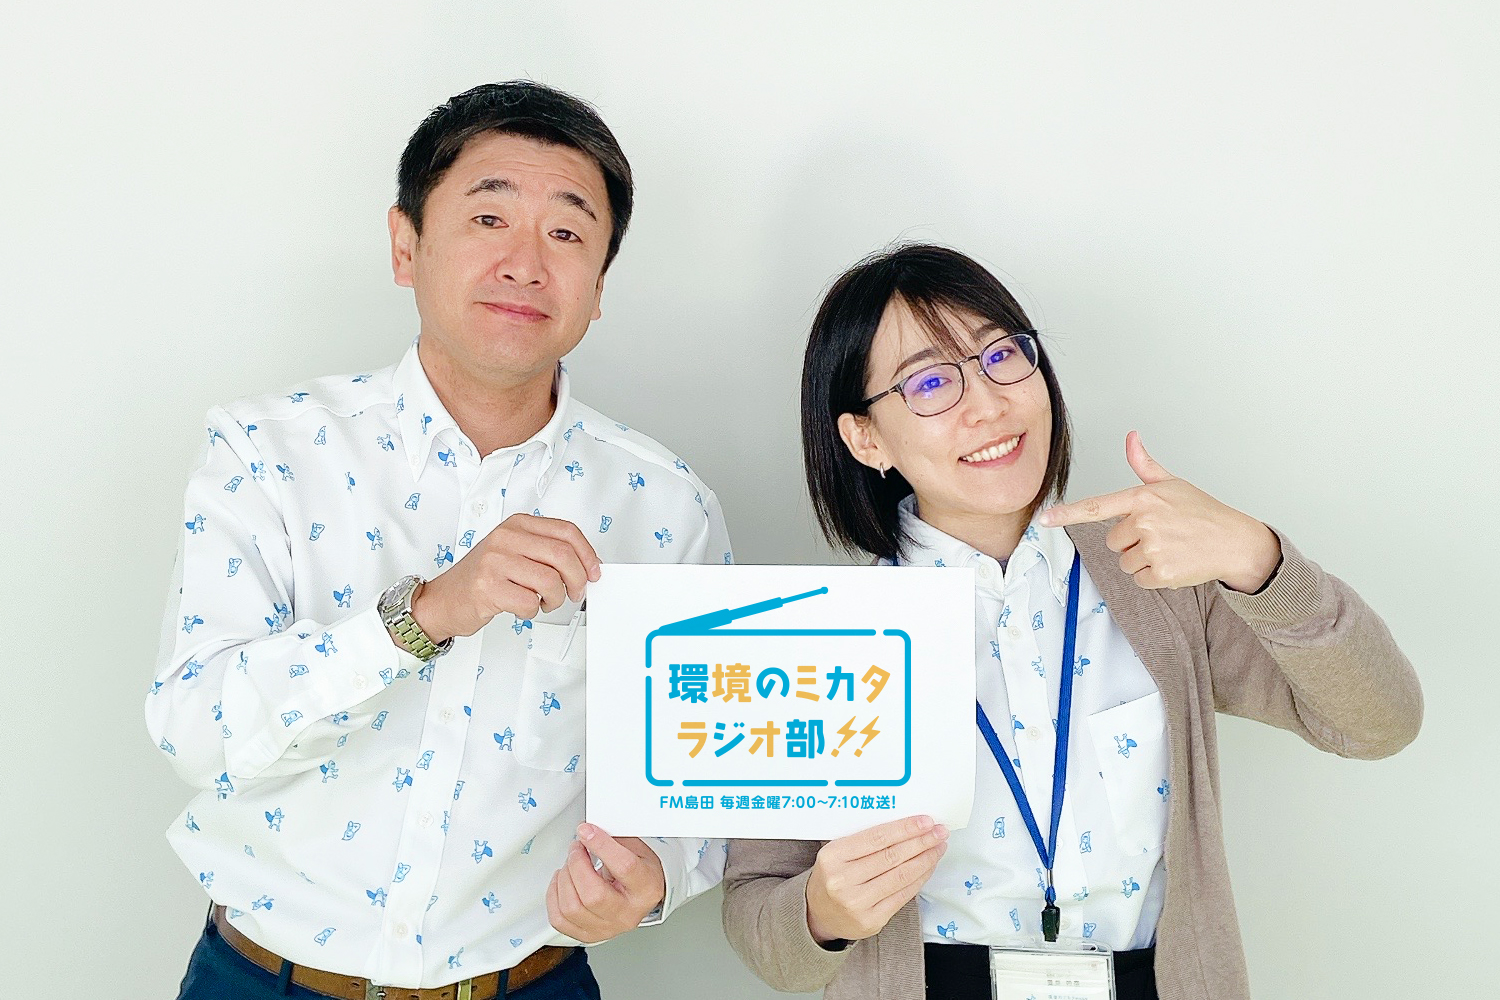 FM島田にて「環境のミカタ ラジオ部」放送開始！